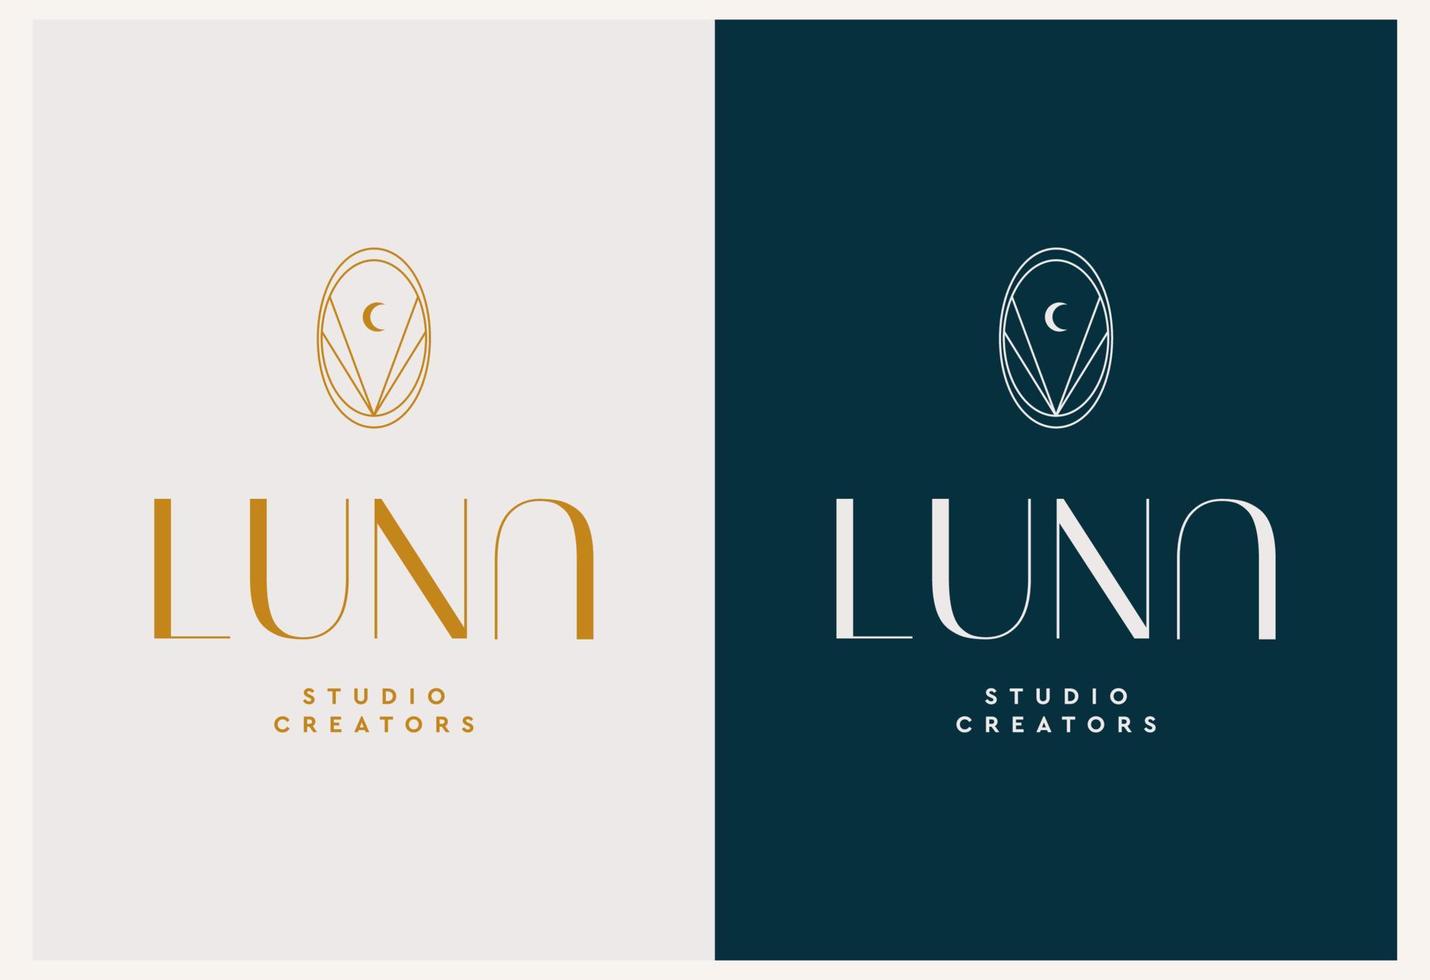 Vektor abstrakte moderne Set-Logo-Designvorlagen im trendigen linearen Stil in goldenen Farben - Luxus- und Schmuckkonzepte für exklusive Dienstleistungen und Produkte, Beauty- und Spa-Industrie